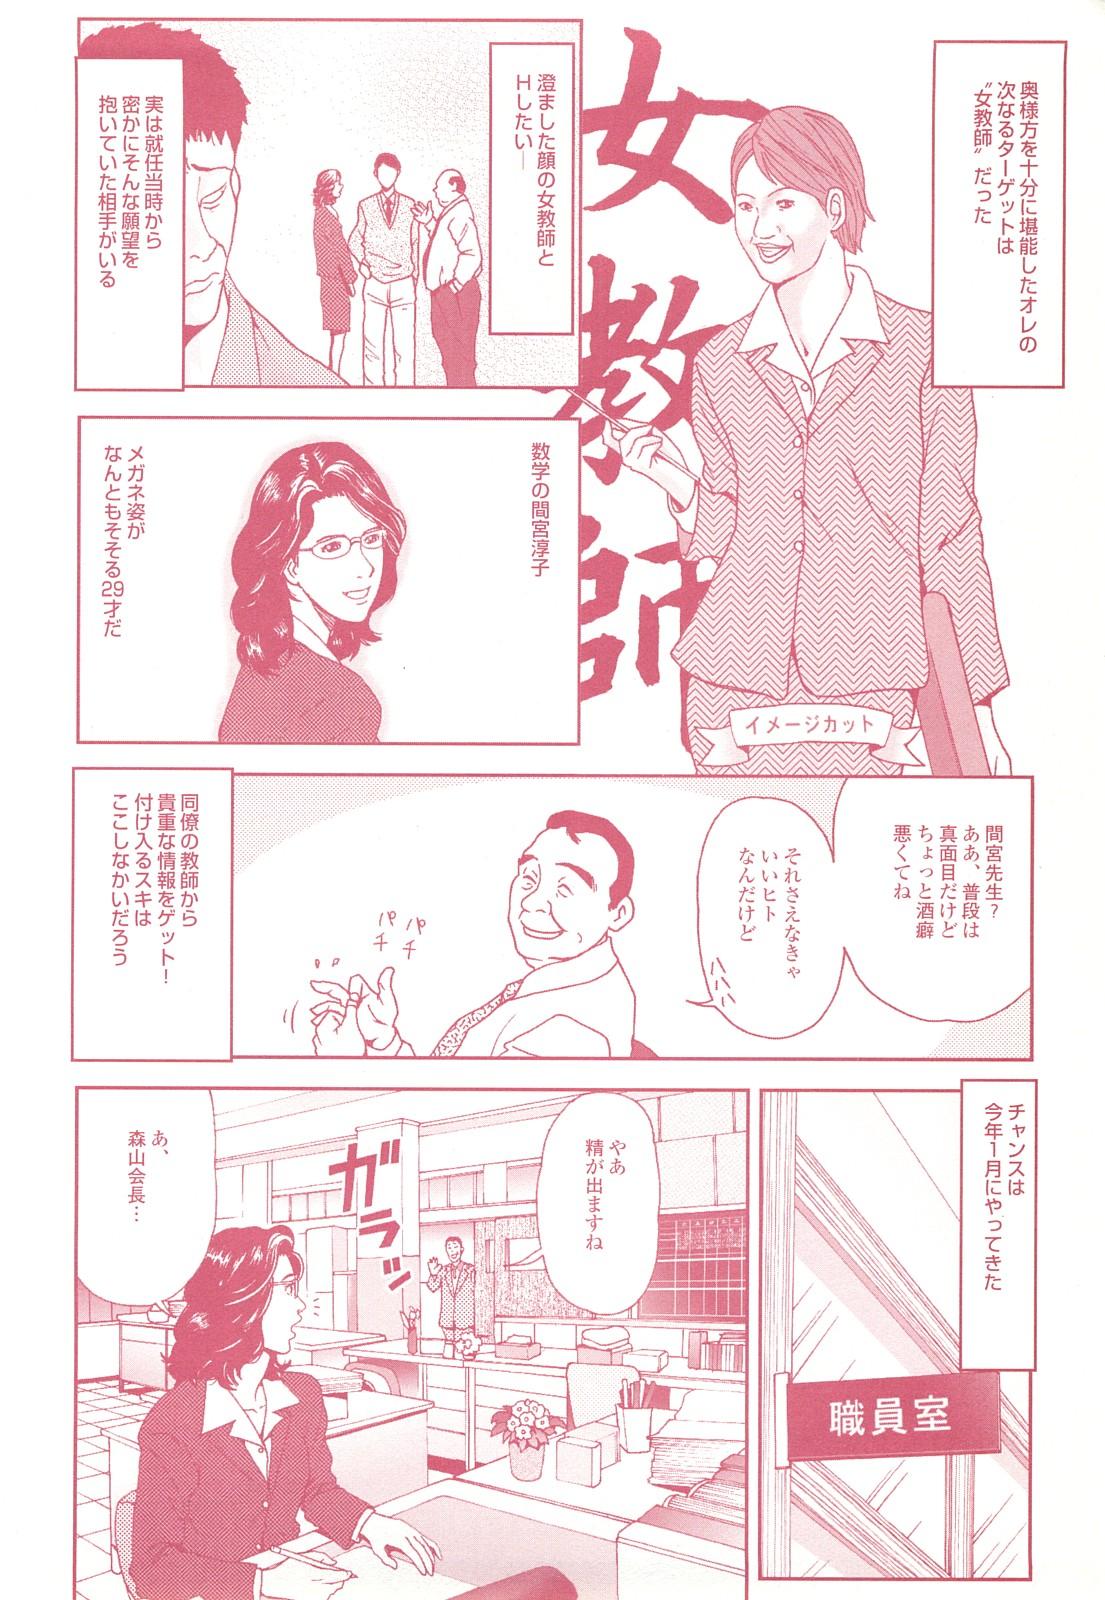 コミック裏モノJAPAN Vol.18 今井のりたつスペシャル号 119